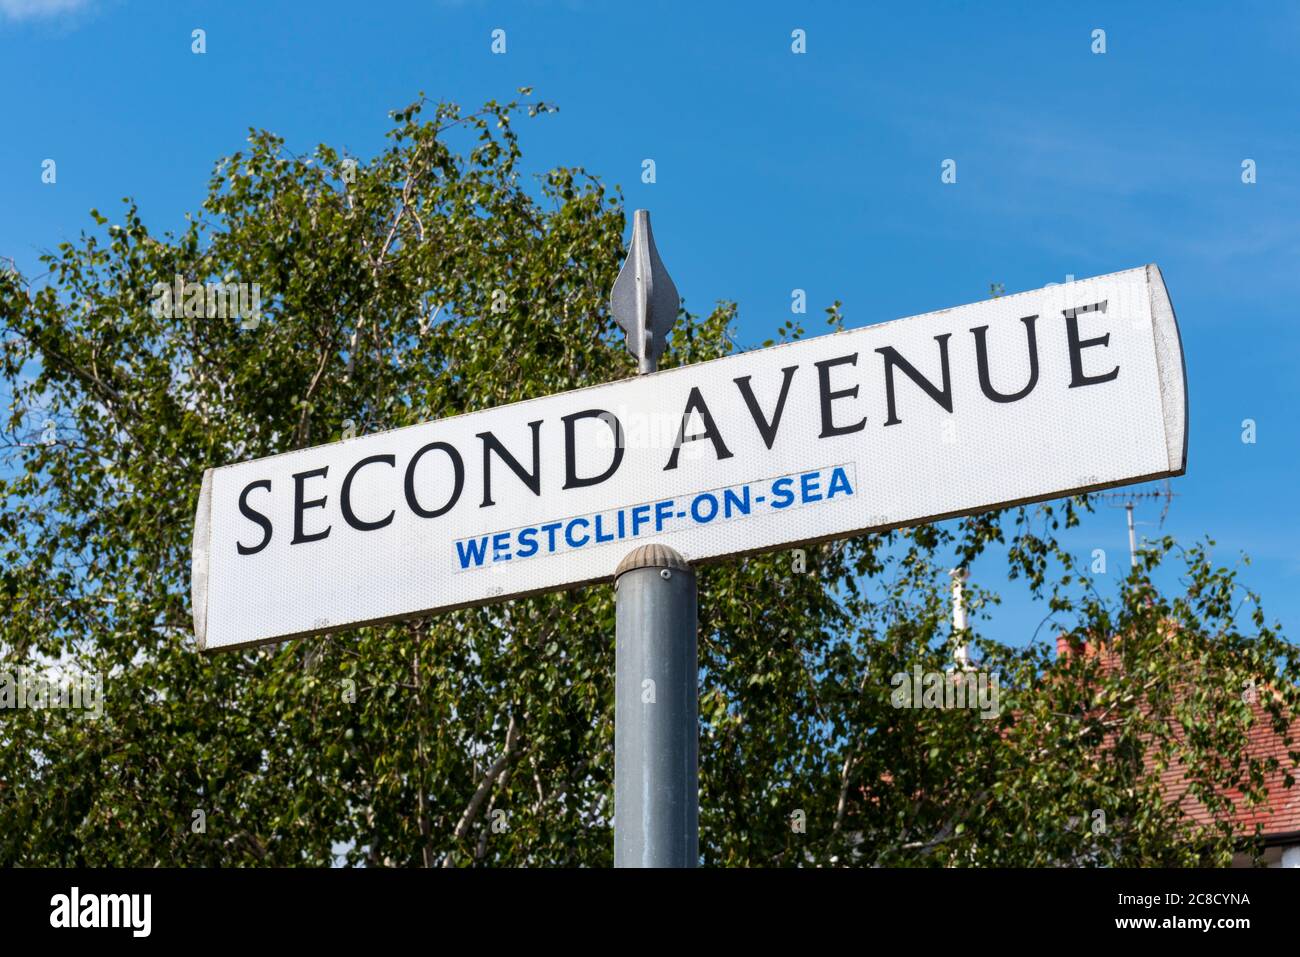 Panneau de signalisation de la route second Avenue à Westcliff on Sea, Southend, Essex, Royaume-Uni. Rue, panneau. Banlieue verdoyante près de Southend. 2ème avenue en Angleterre Banque D'Images